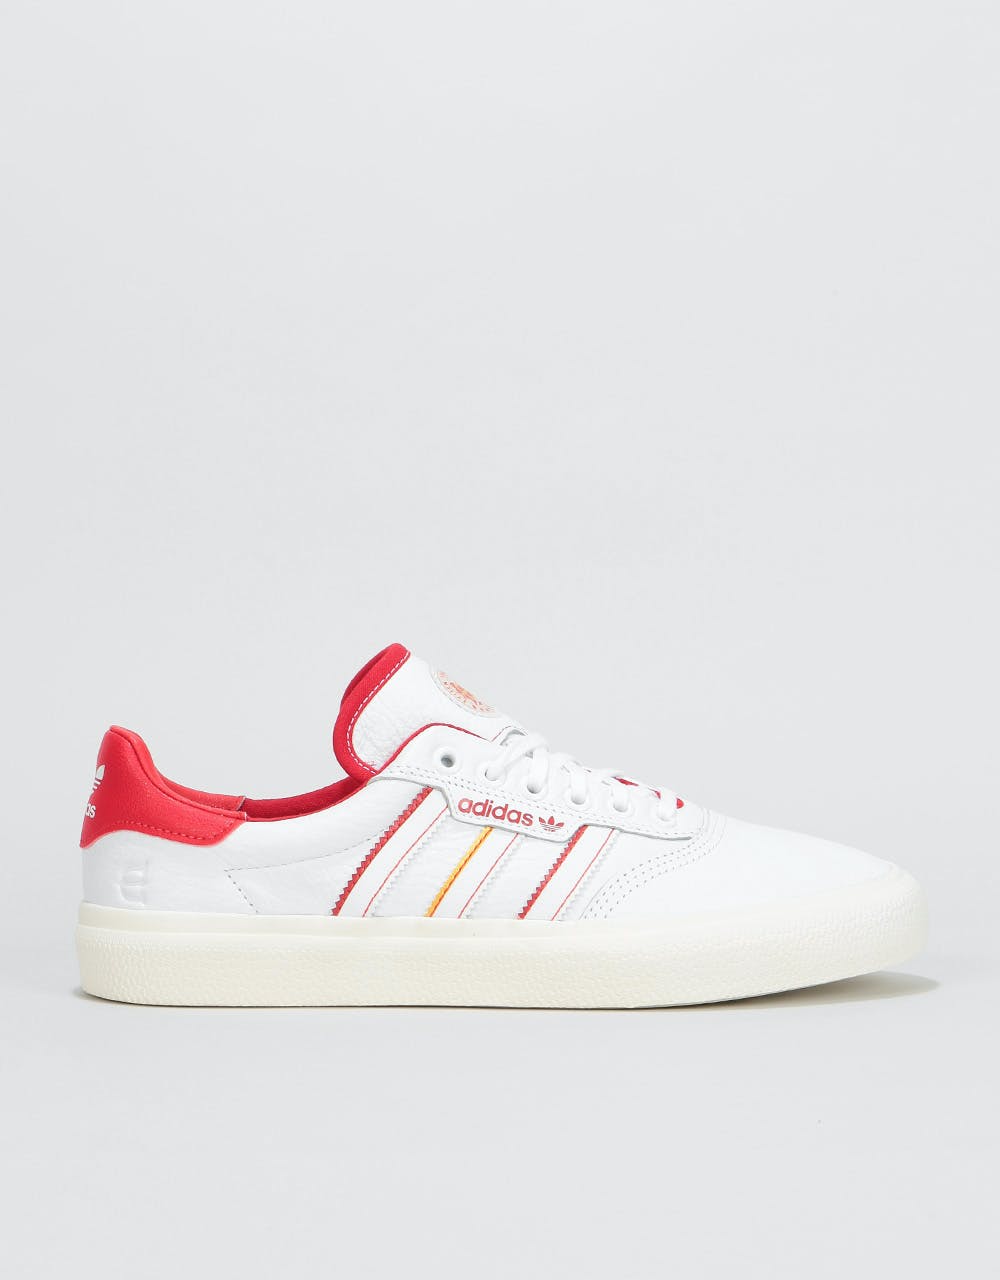 Adidas x Evisen 3MC Skate Shoes - White/Scarlet/Gold Metallic